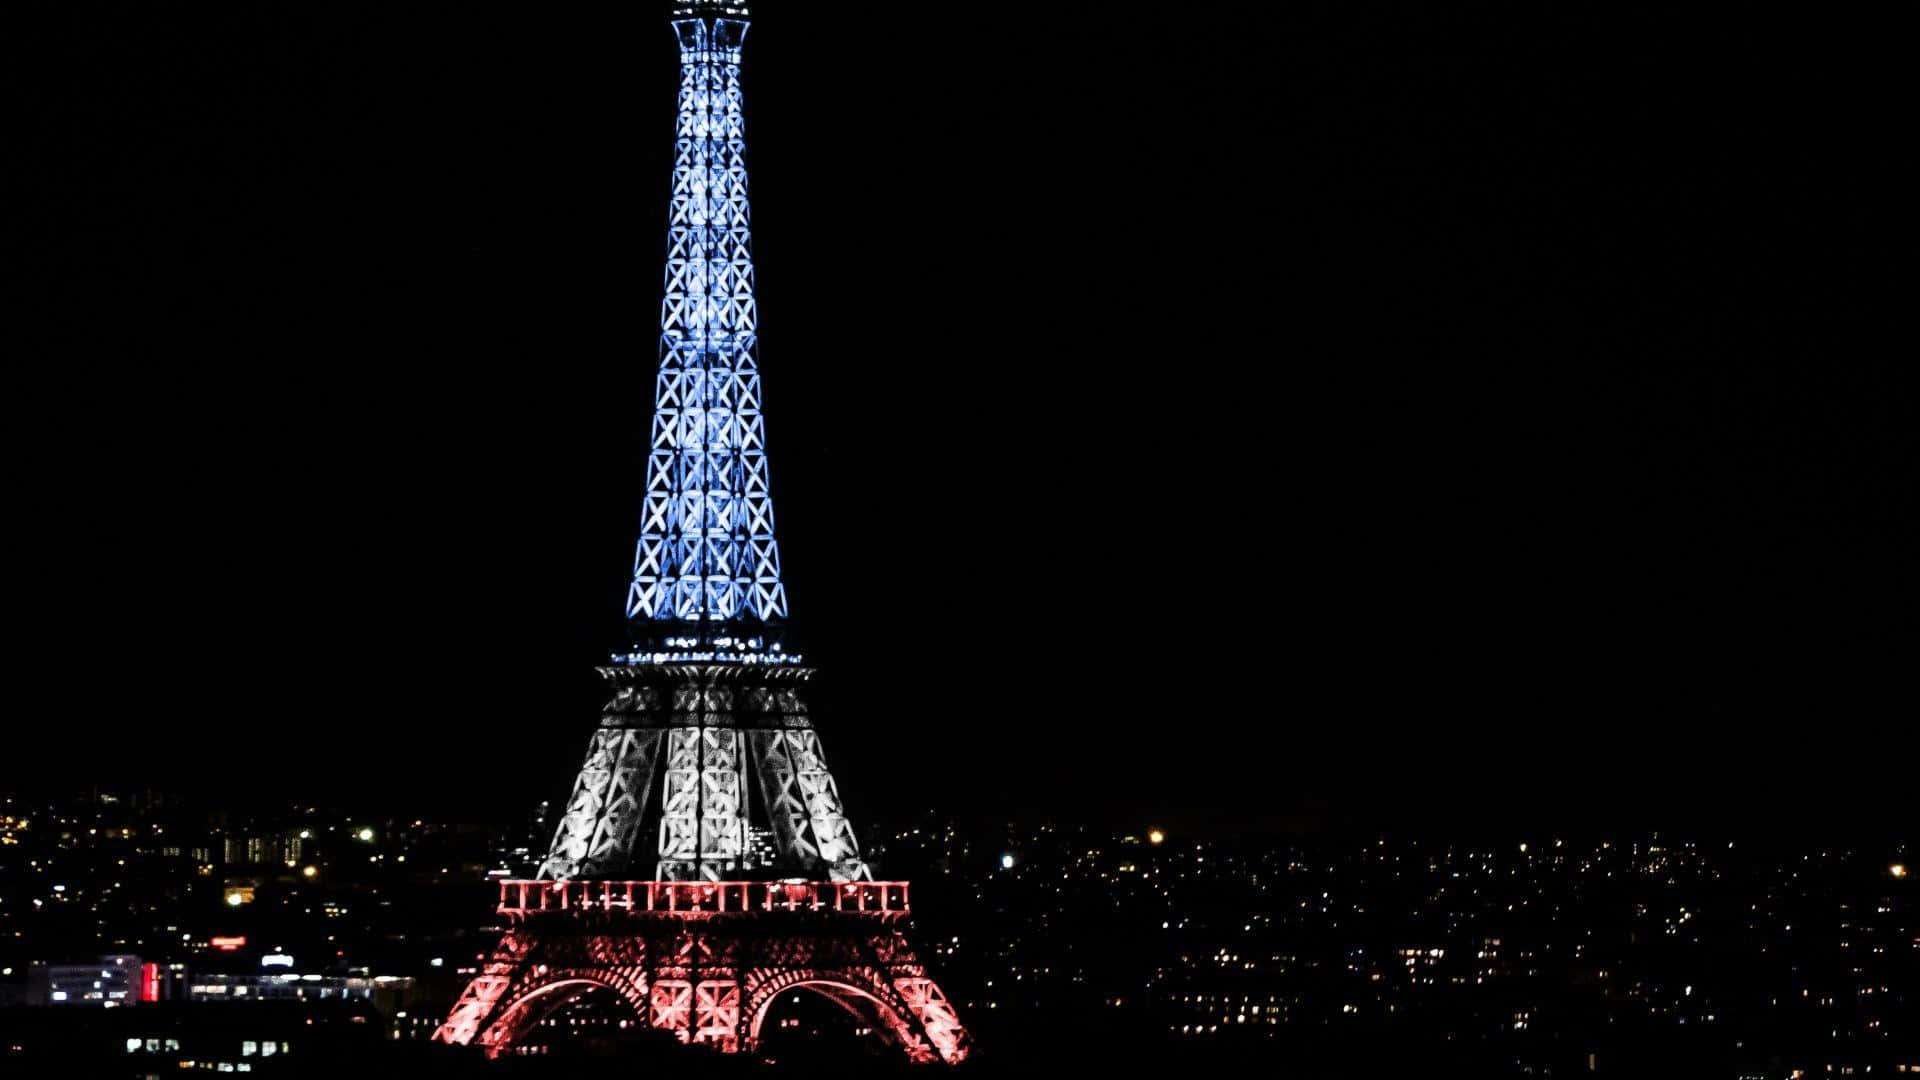 Smukudsigt Over Eiffeltårnet I Paris, Frankrig.